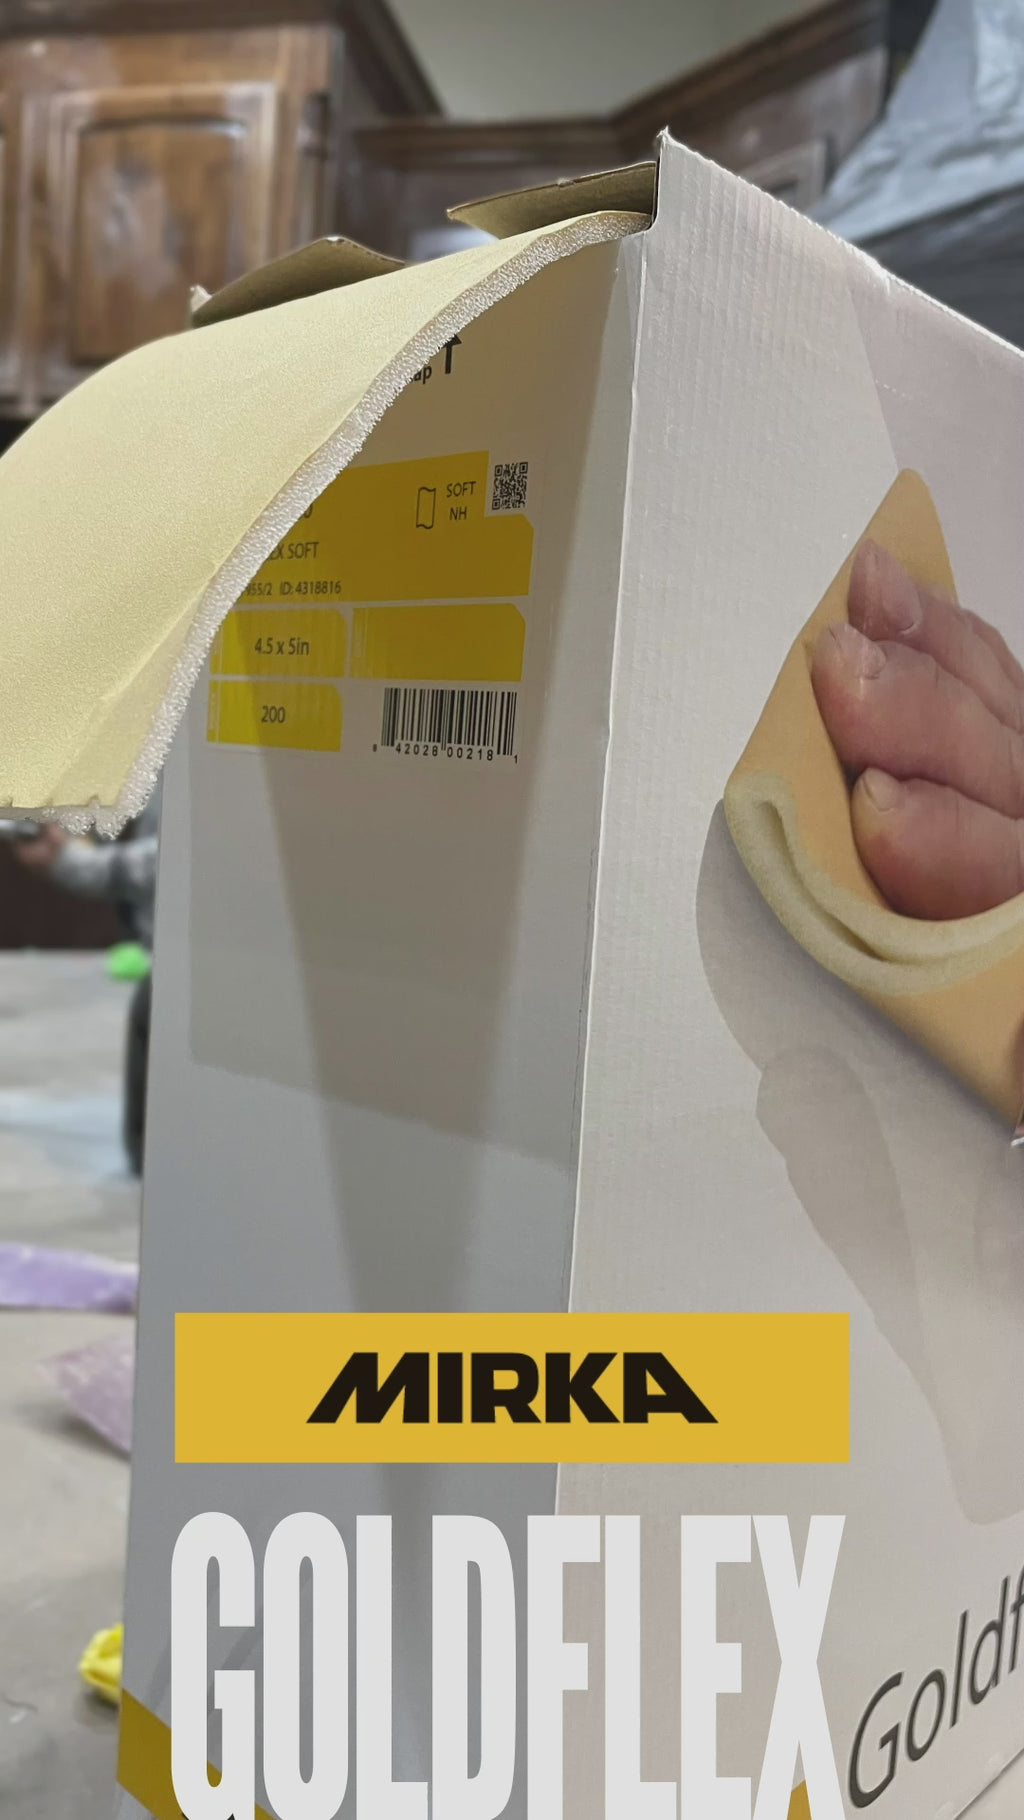 Mirka Goldflex Soft Pad 4.5" x 5" - 200 sheets - video